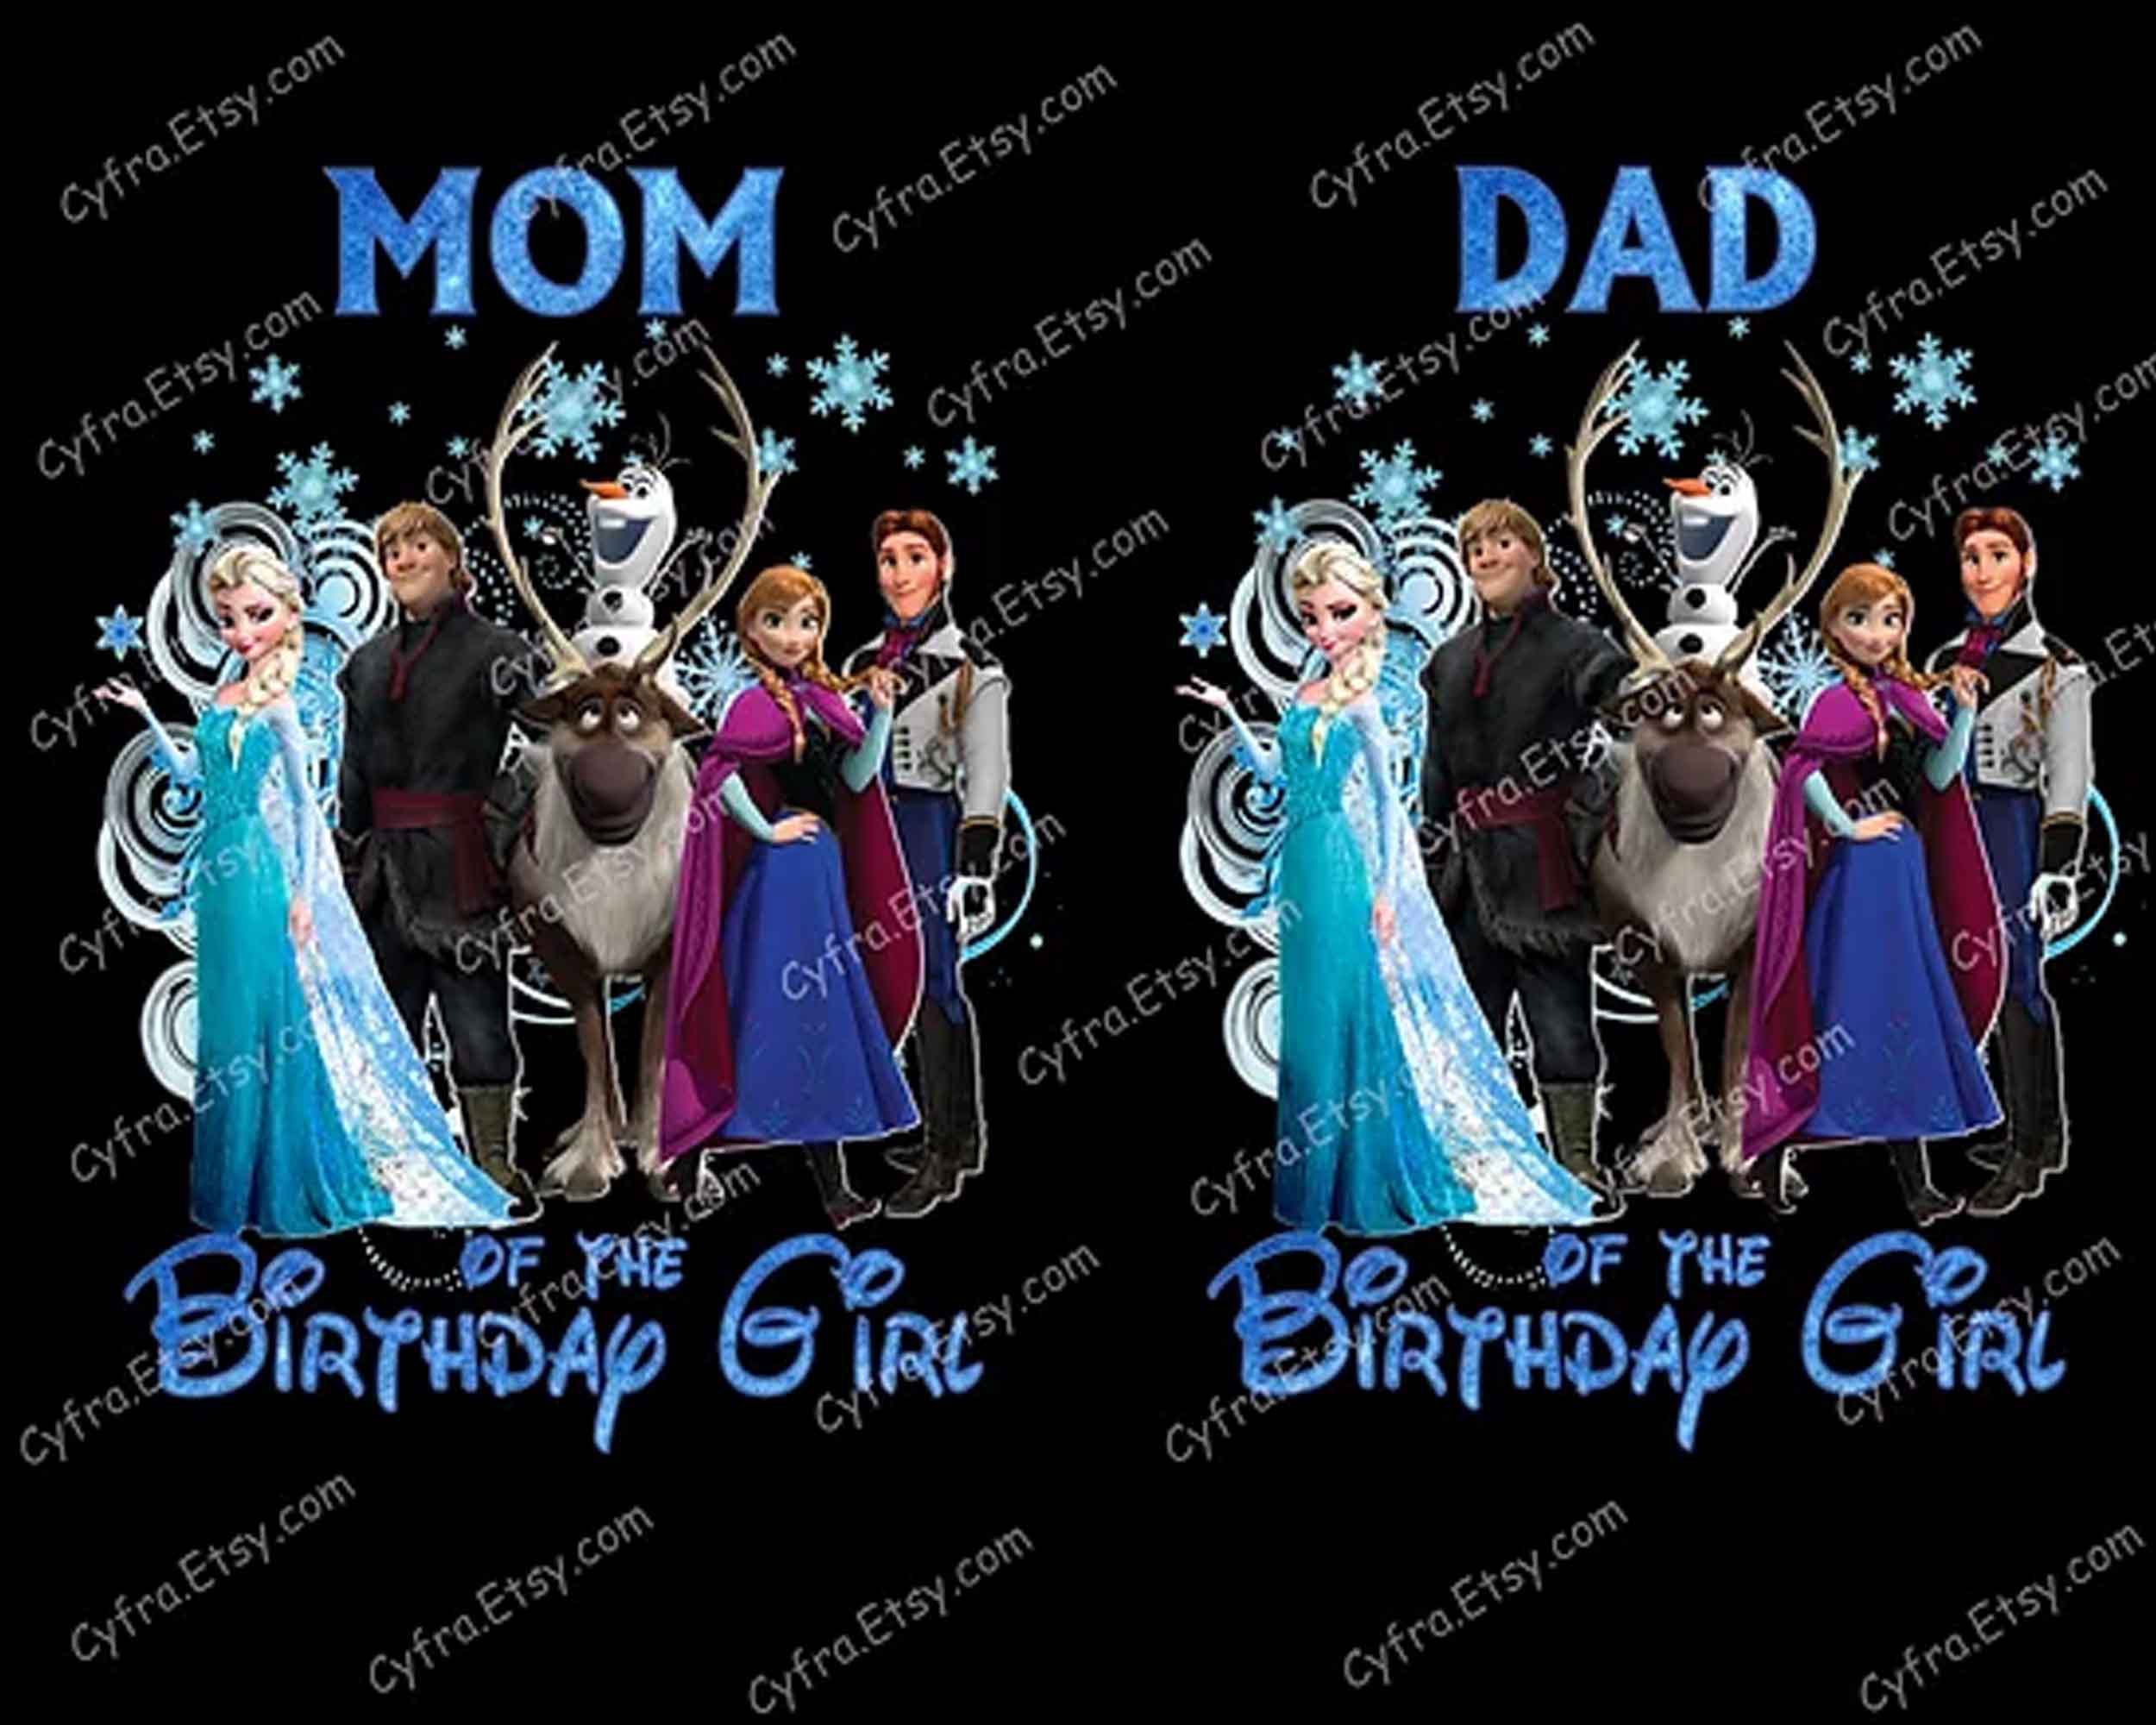 Elsa png clip art, Frozen clipart, Disney Princess PNG download, Queen Elsa digital image download